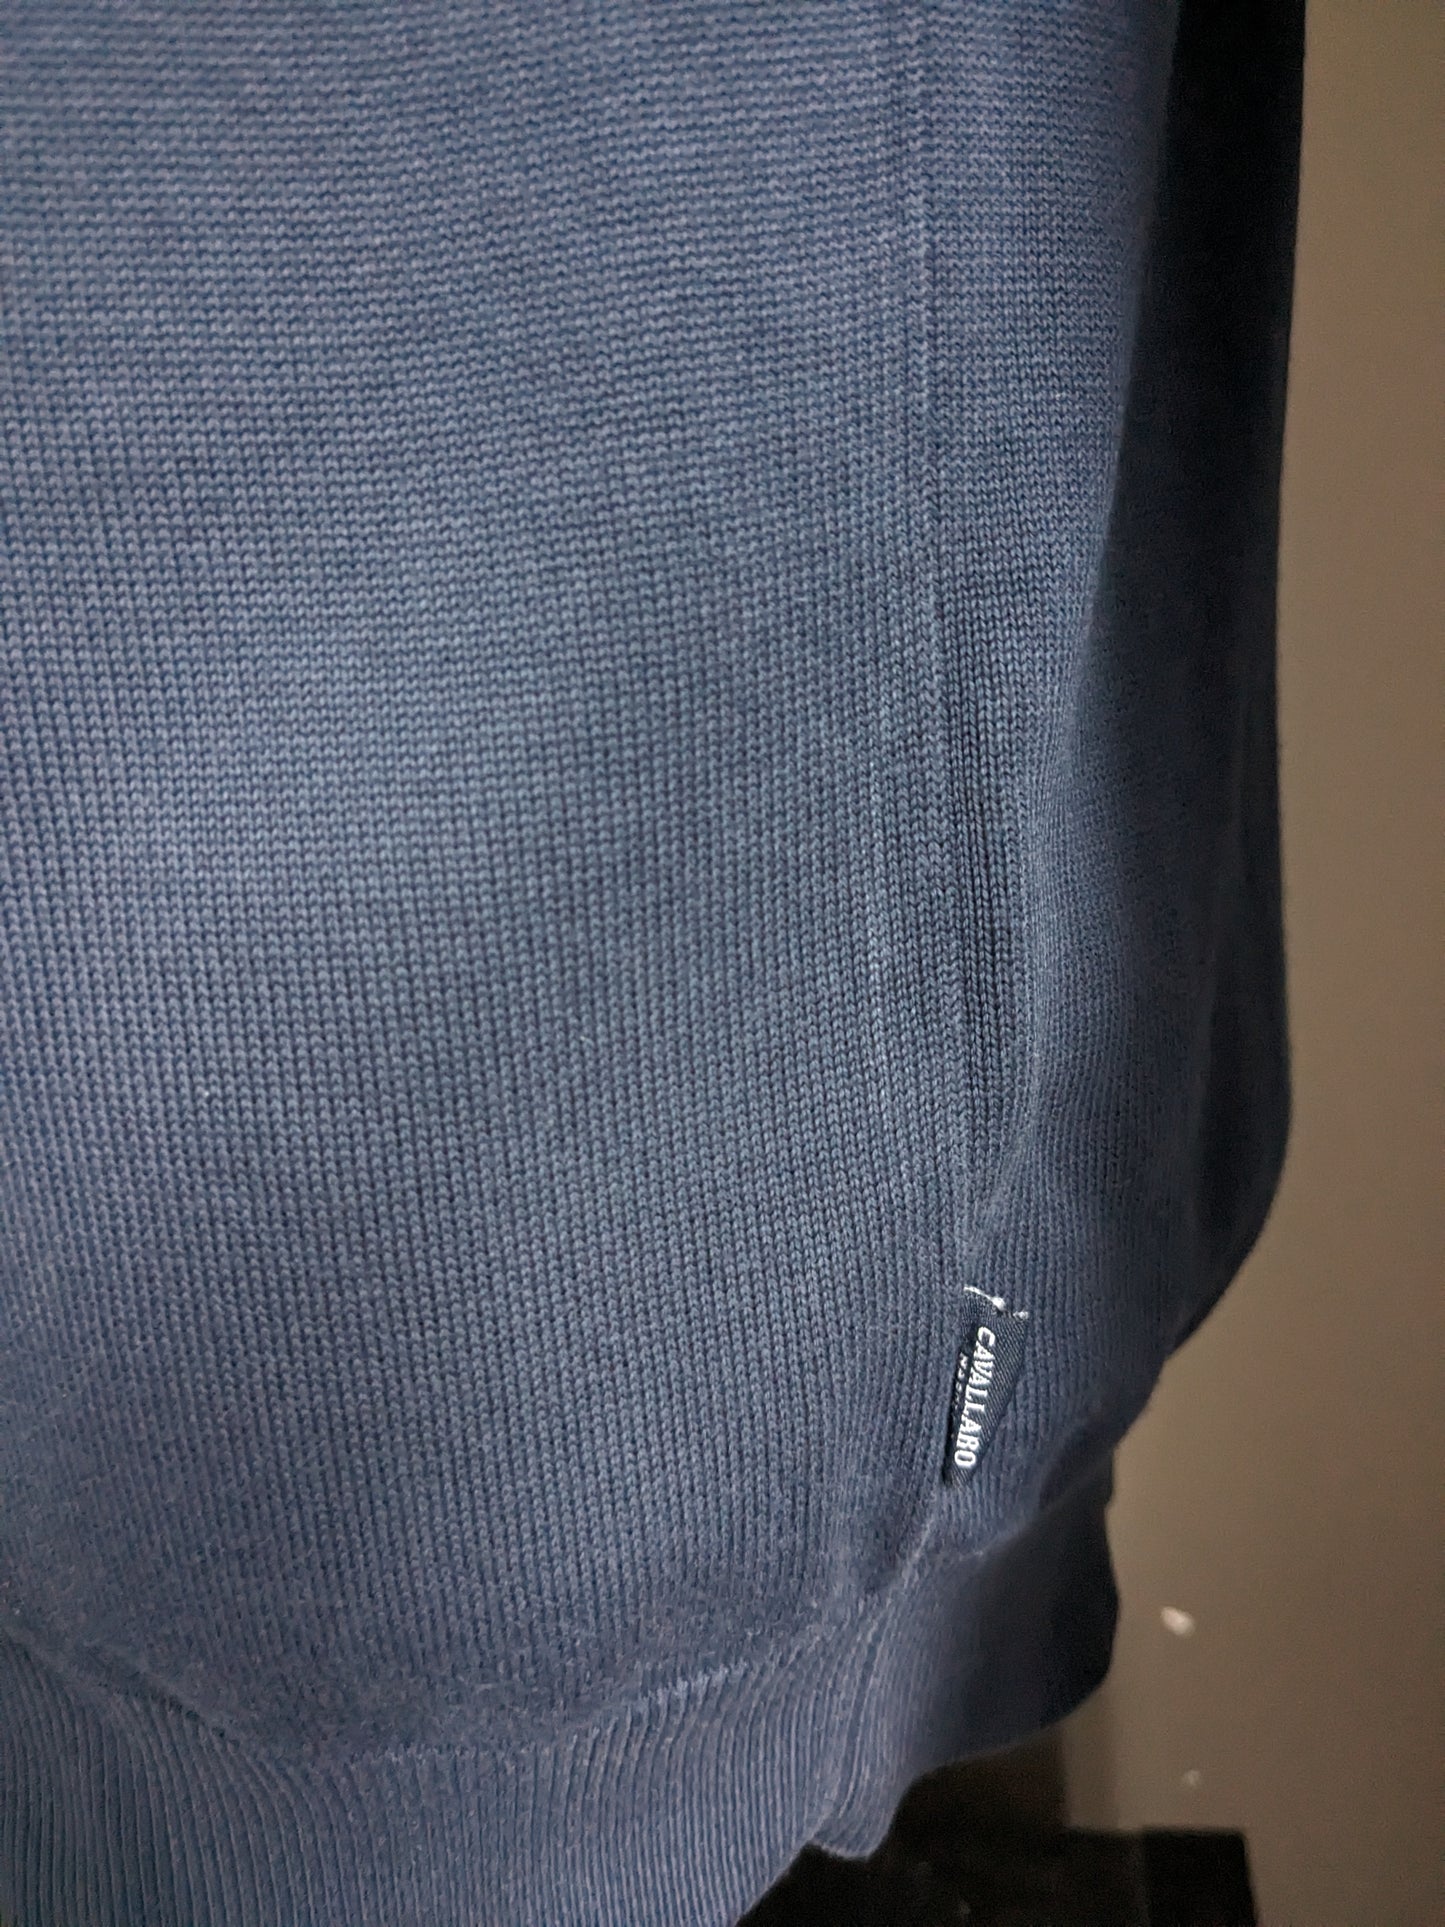 Cavallaro cotton sweater with V-neck. Dark blue colored. Size S.